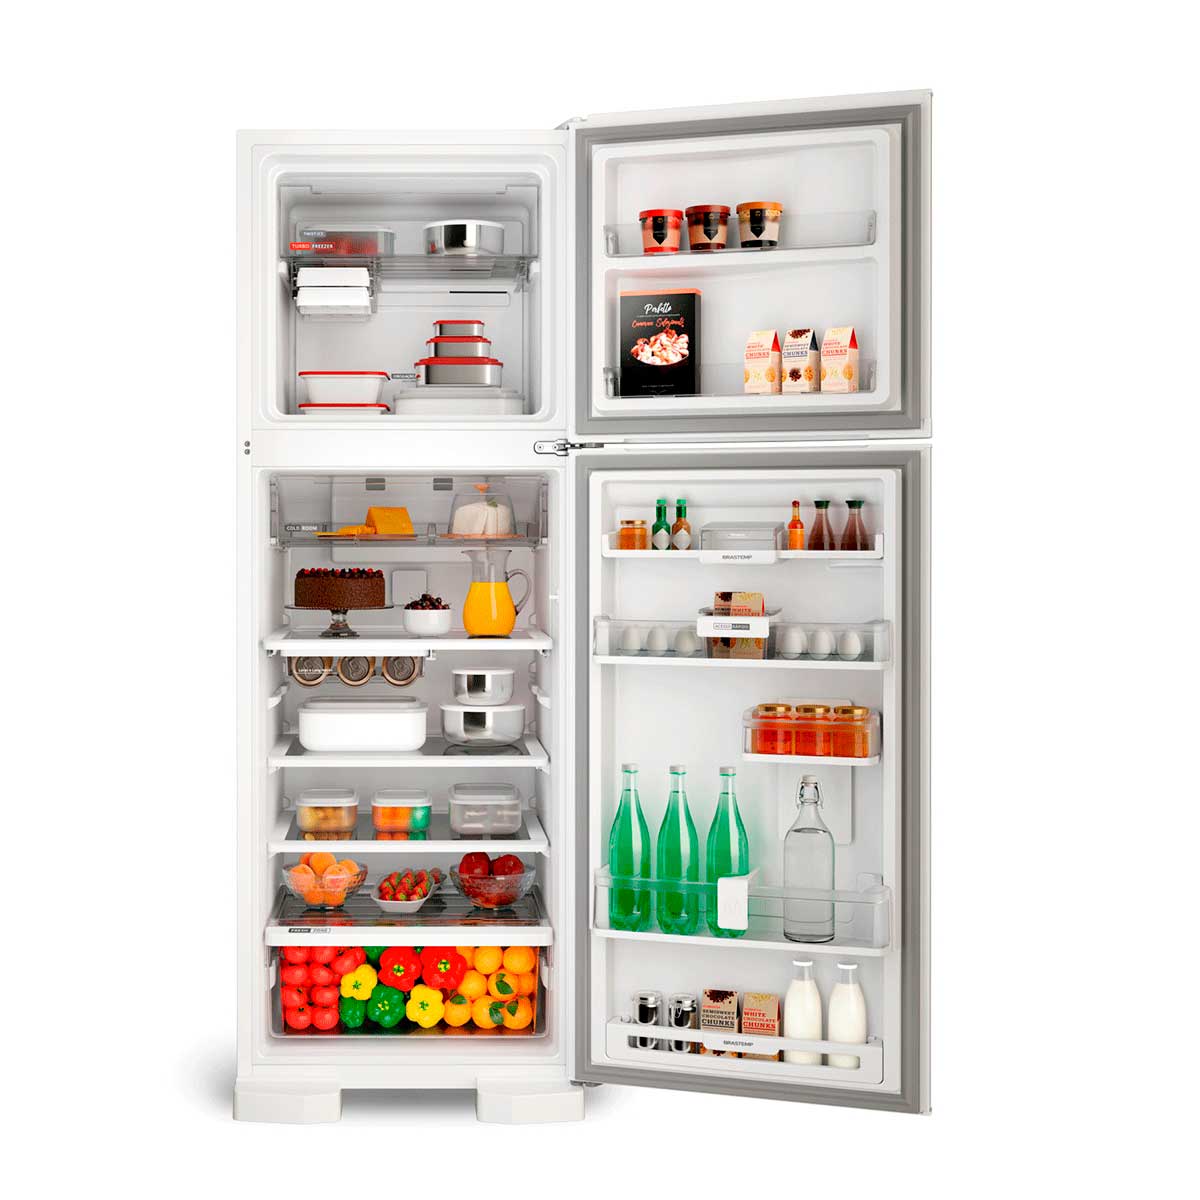 refrigerador-brastemp-2-portas-branco-375l-frost-free-220v-brm45hbbna-3.jpg